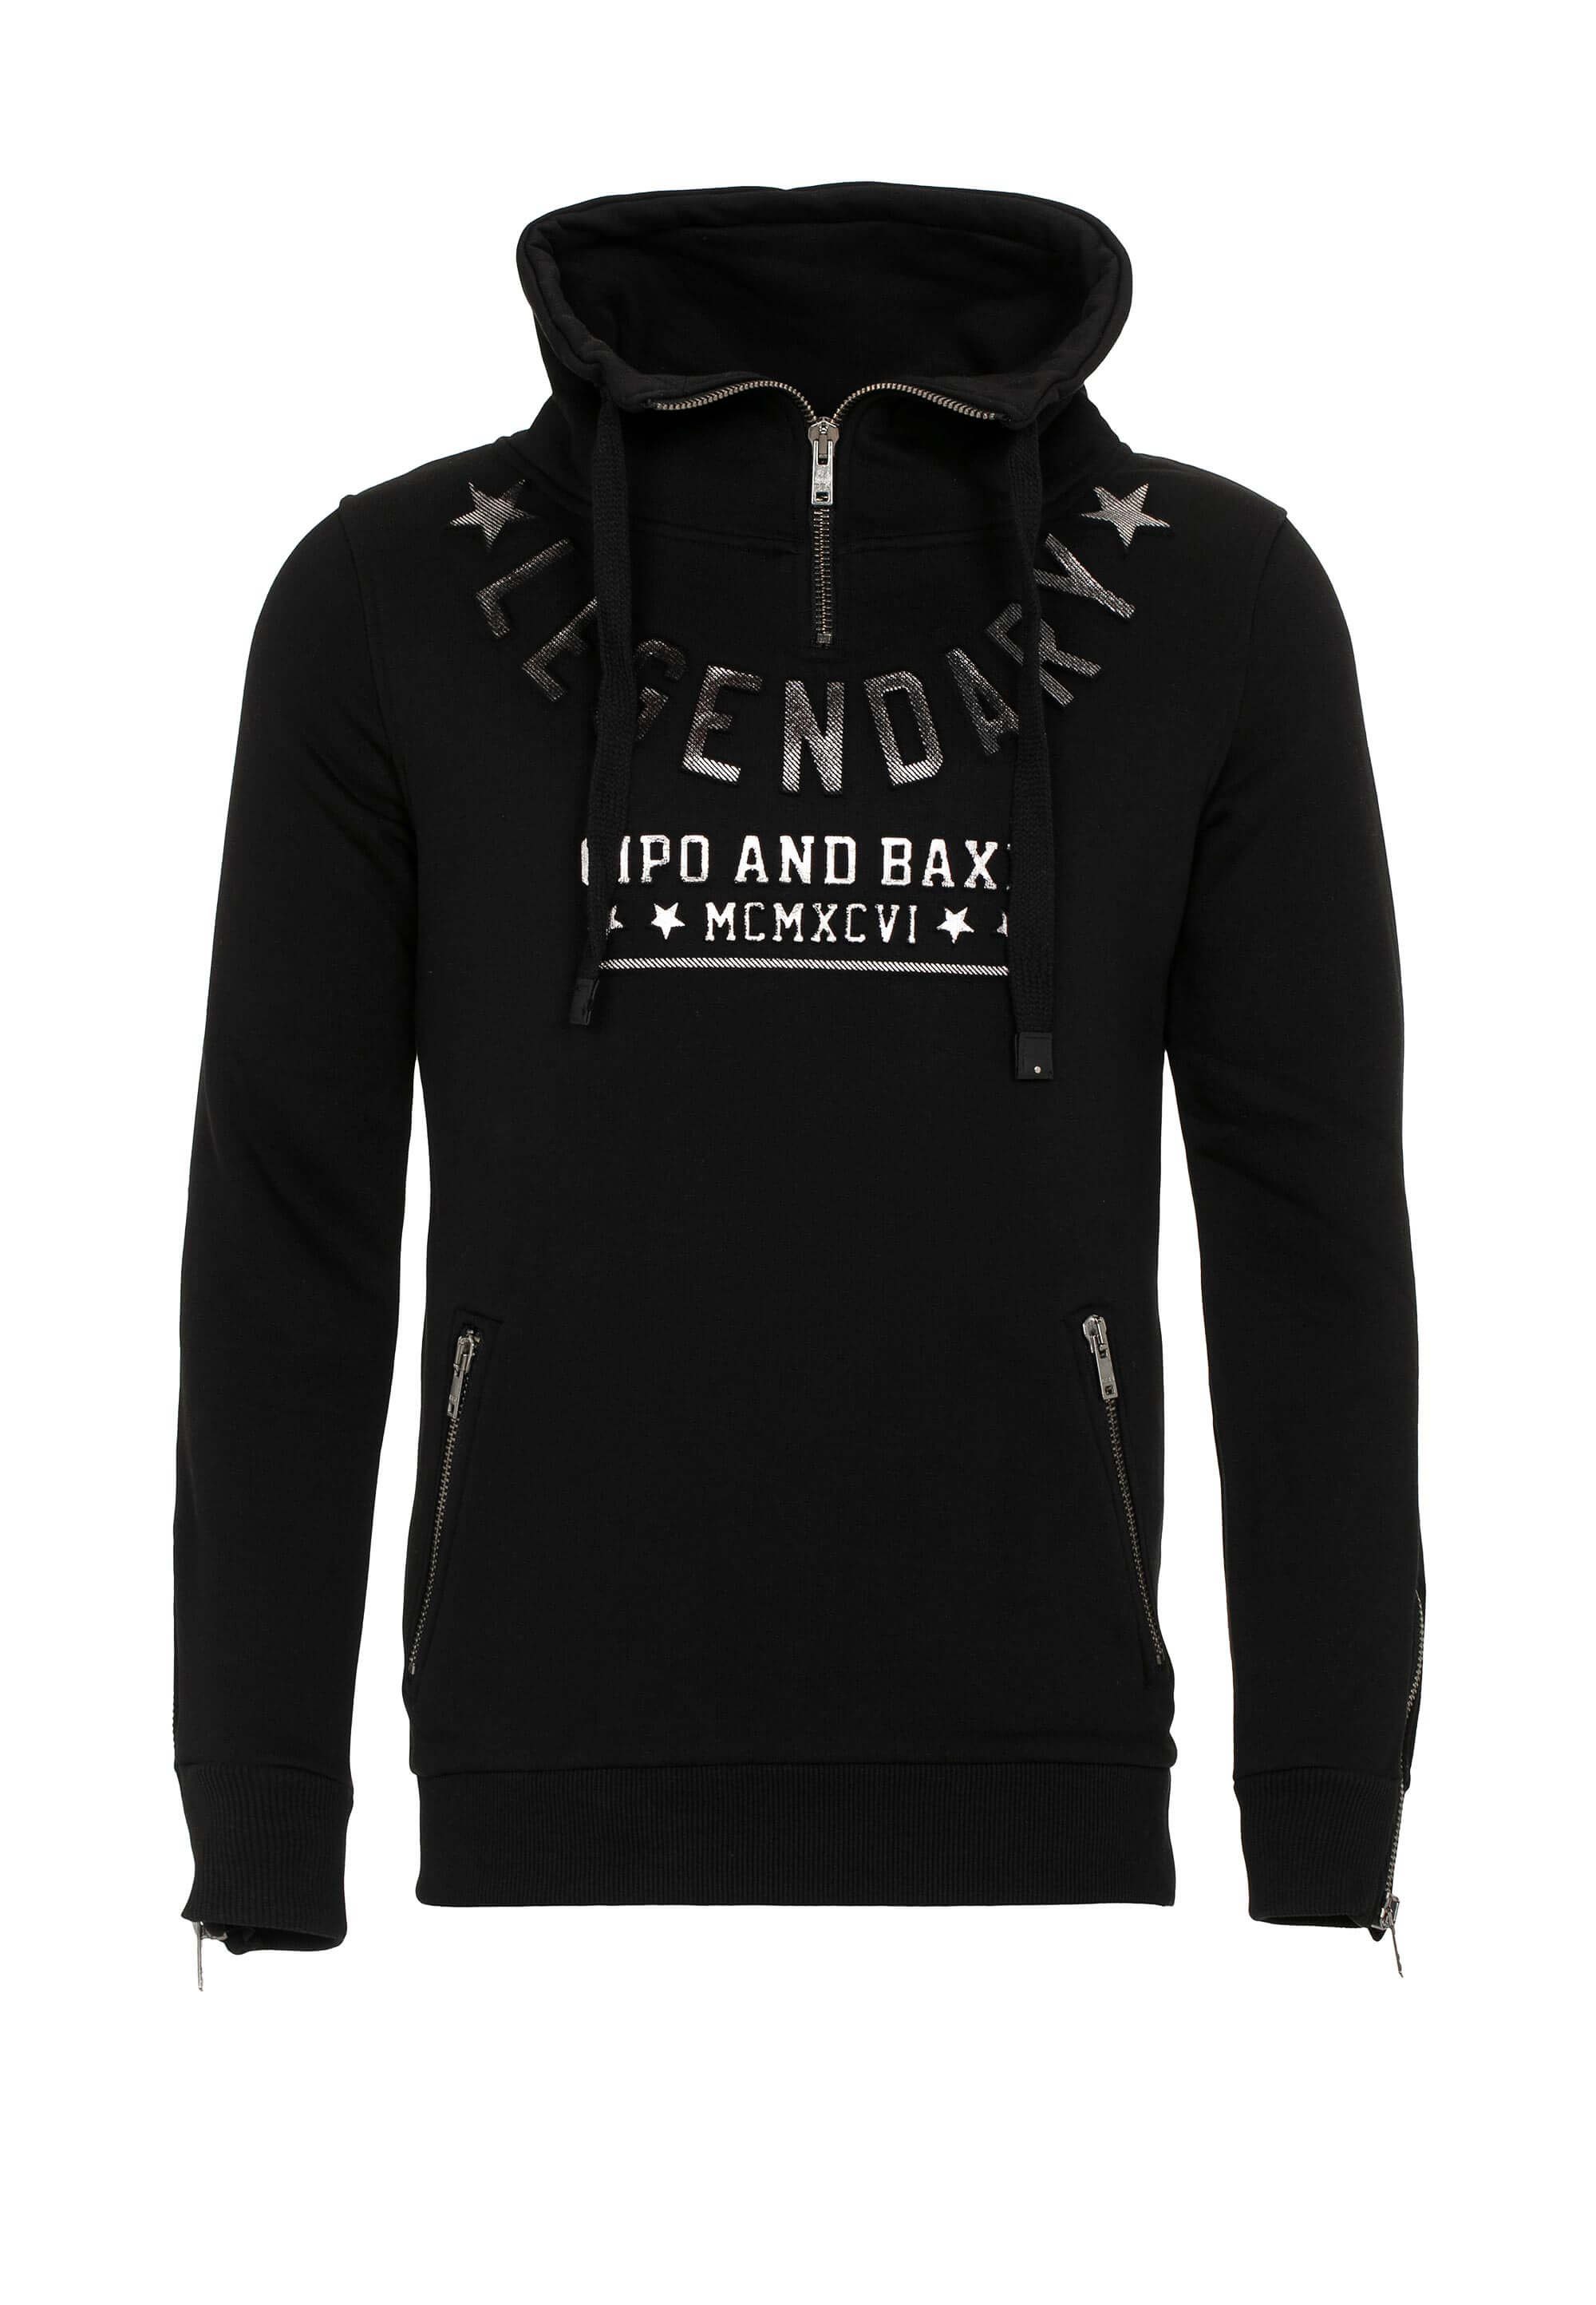 Cipo & Baxx Sweatshirt mit Schlauchkragen schwarz